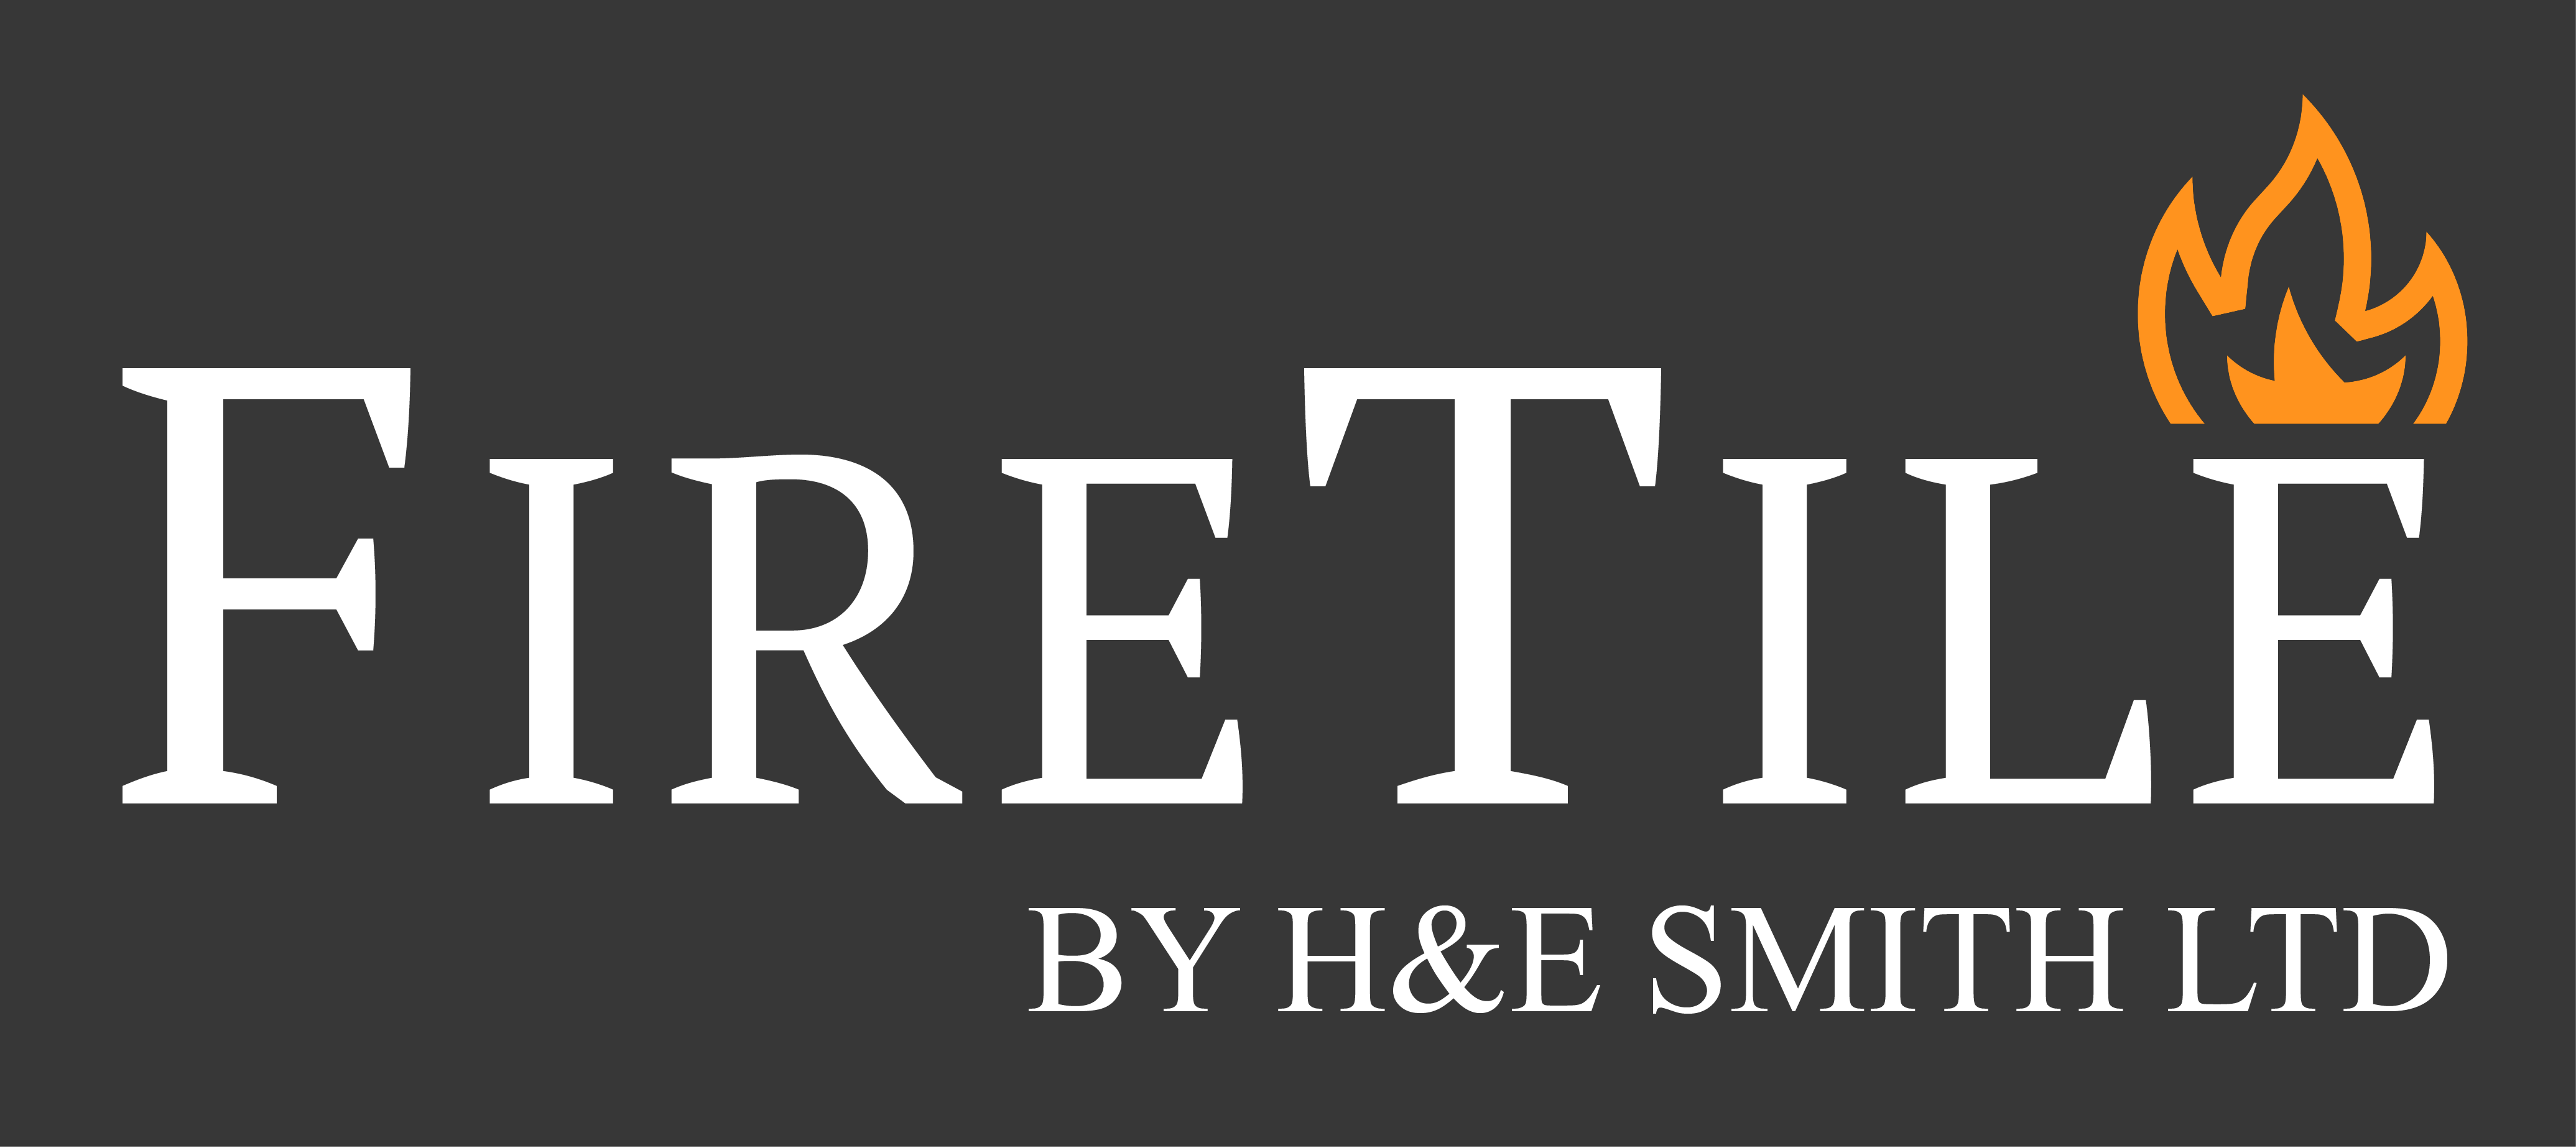 Contact H&E Smith | H & E Smith Ltd, Hanley, Stoke-on-Trent